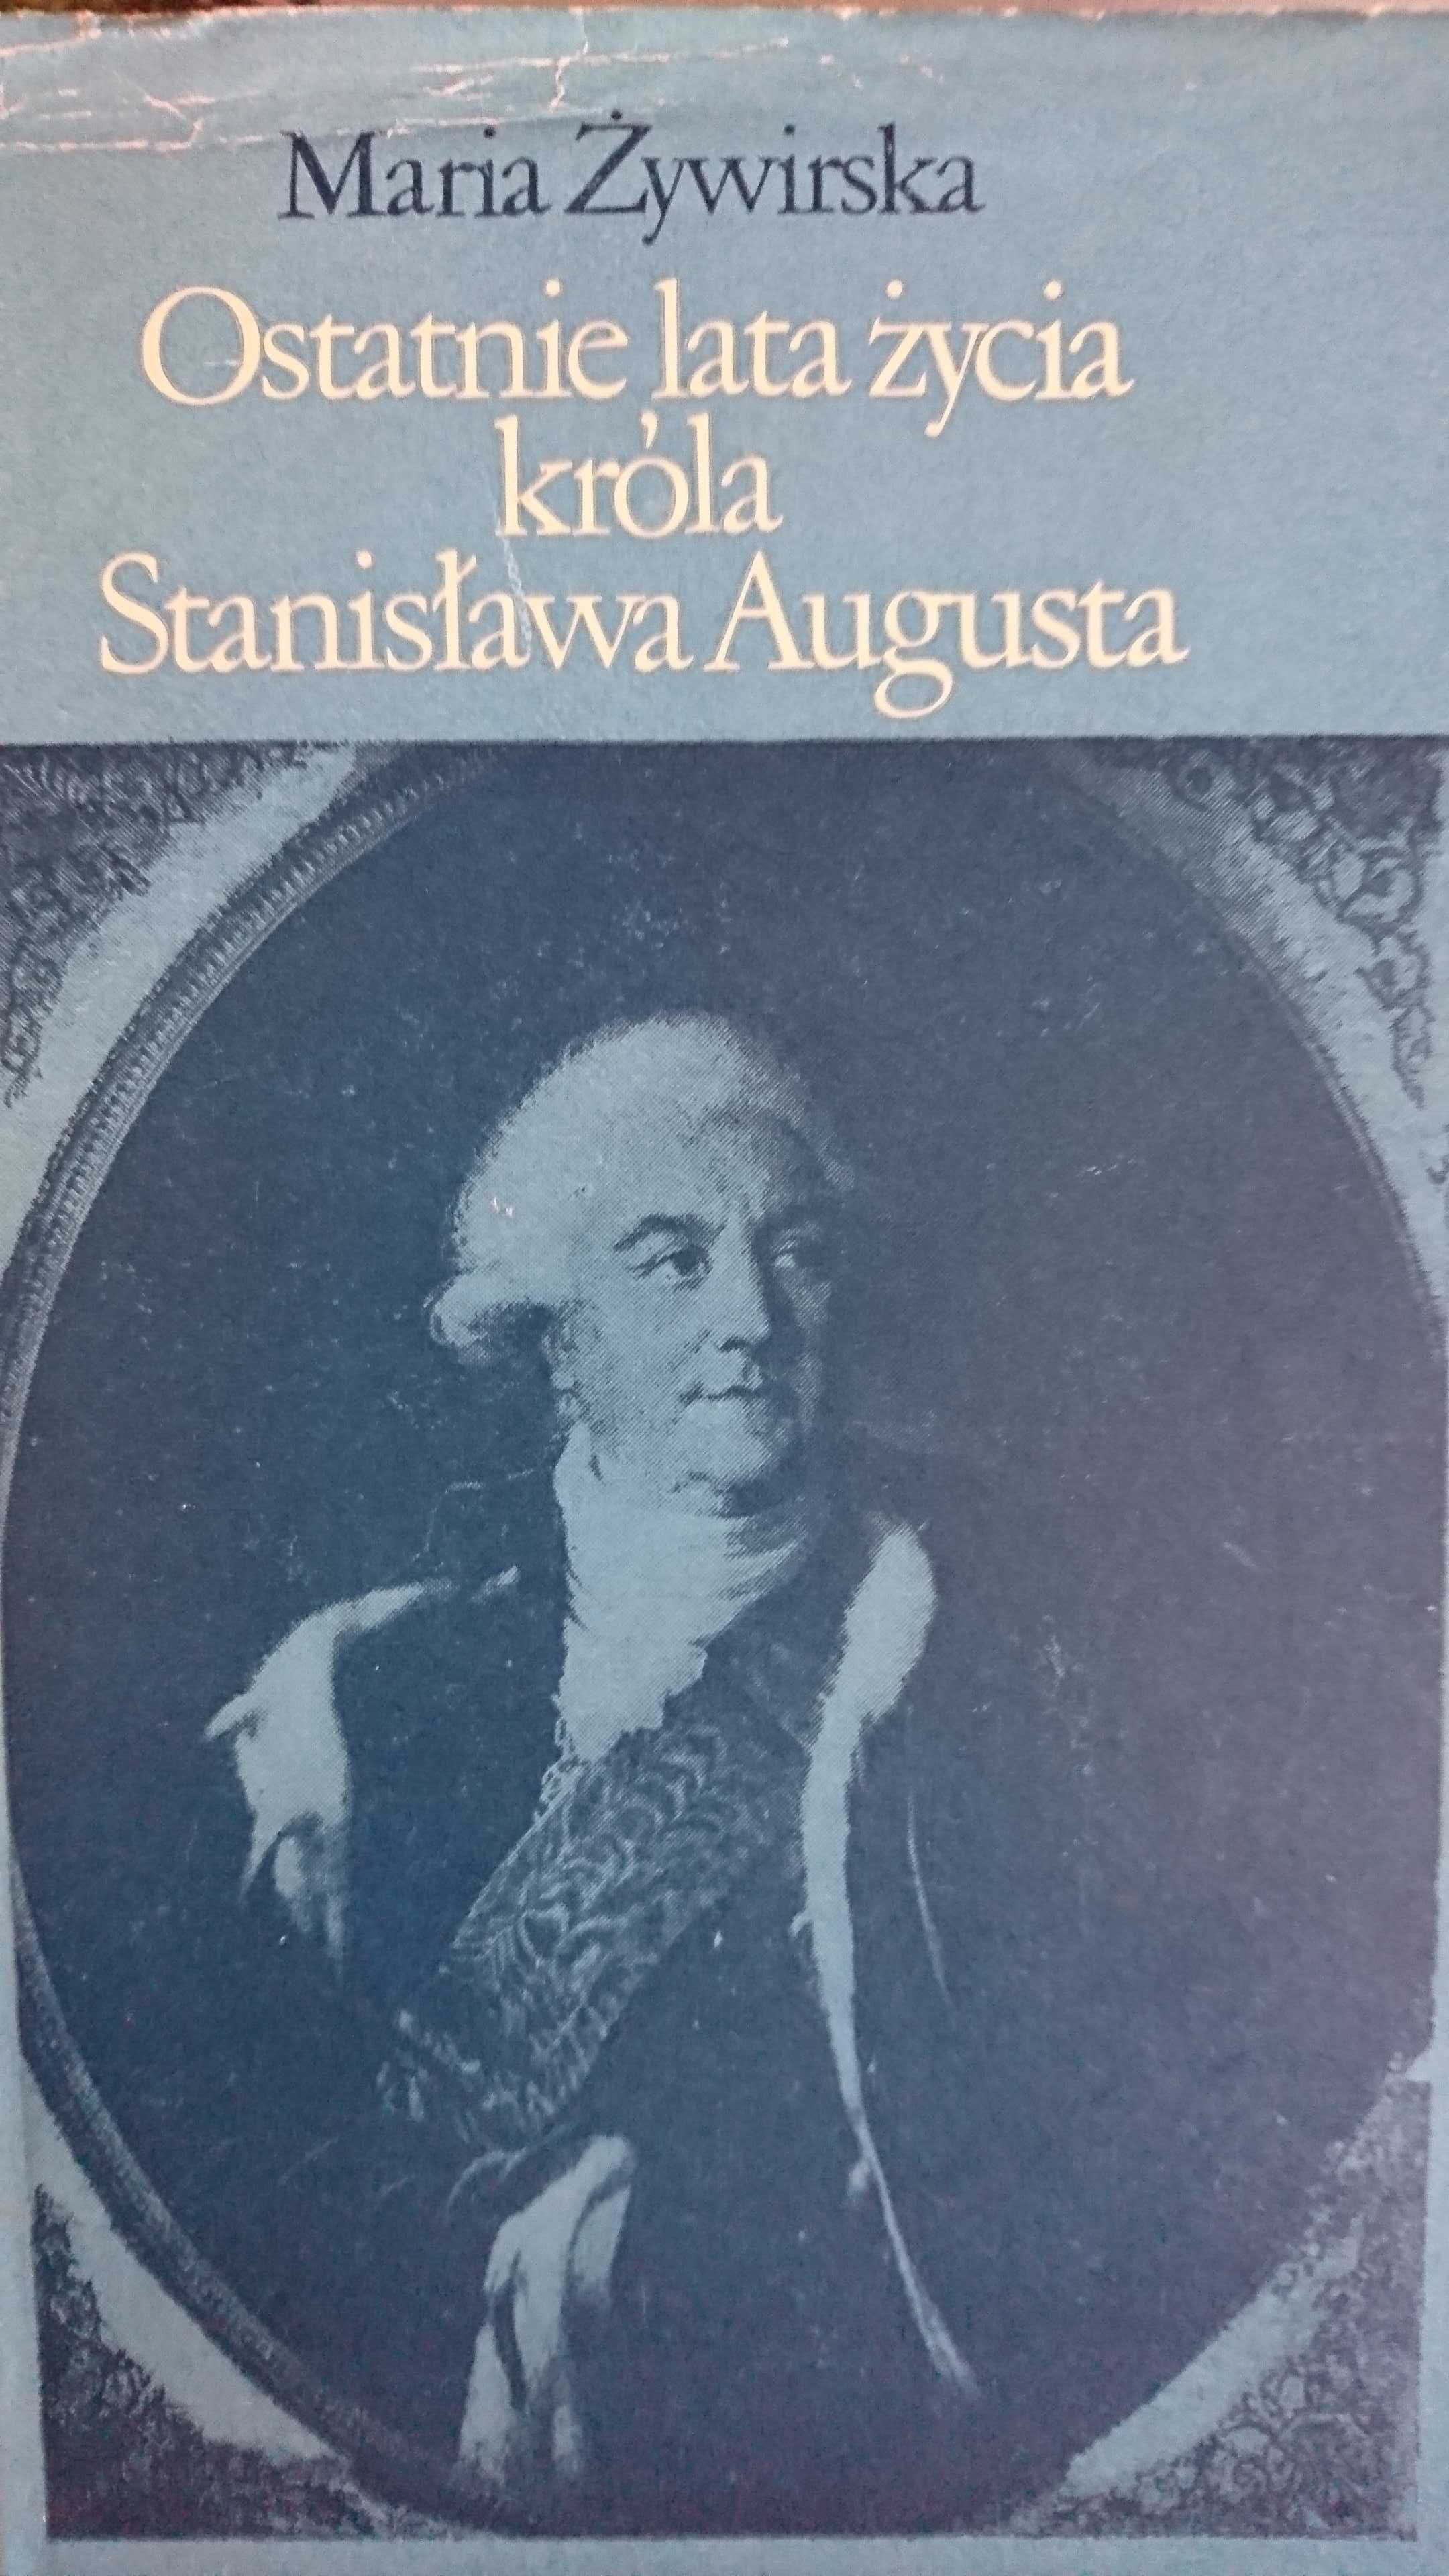 Ostatnie lata życia króla Stanisława Augusta, oświecenie, rozbiory